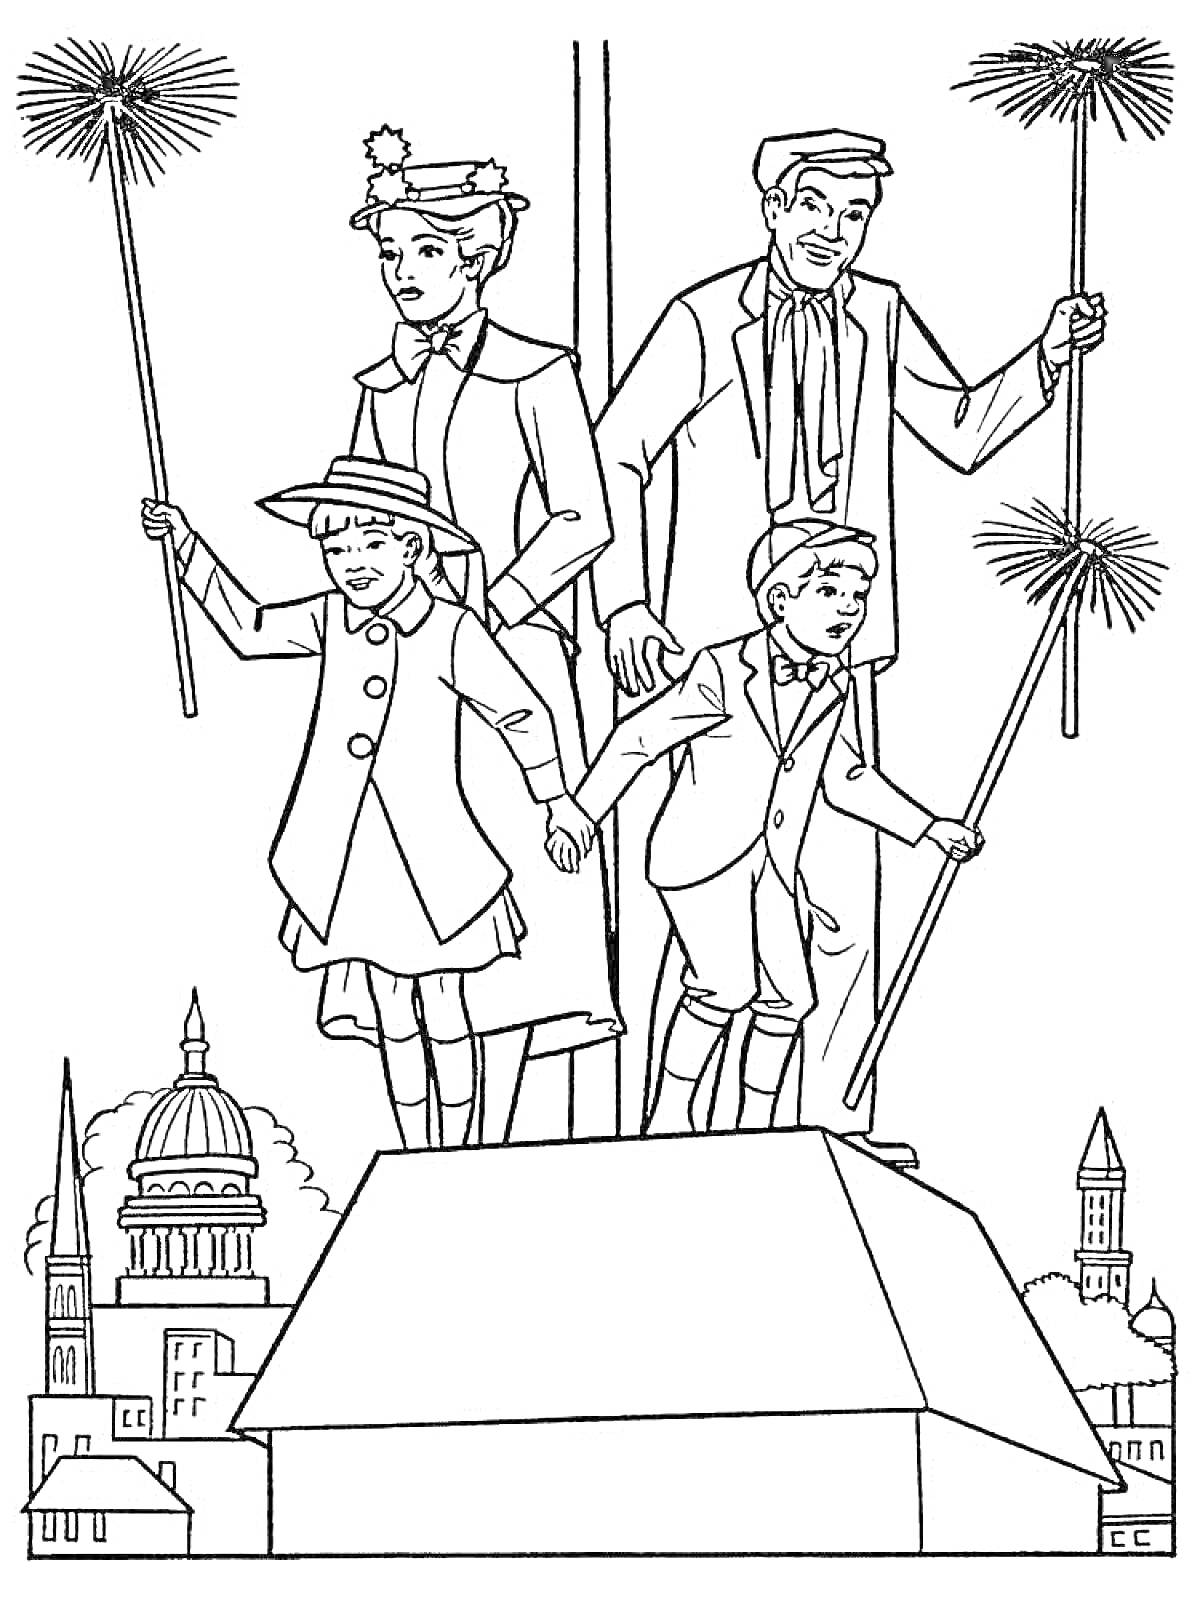 Двое взрослых и двое детей на крыше с метлами, город на заднем плане